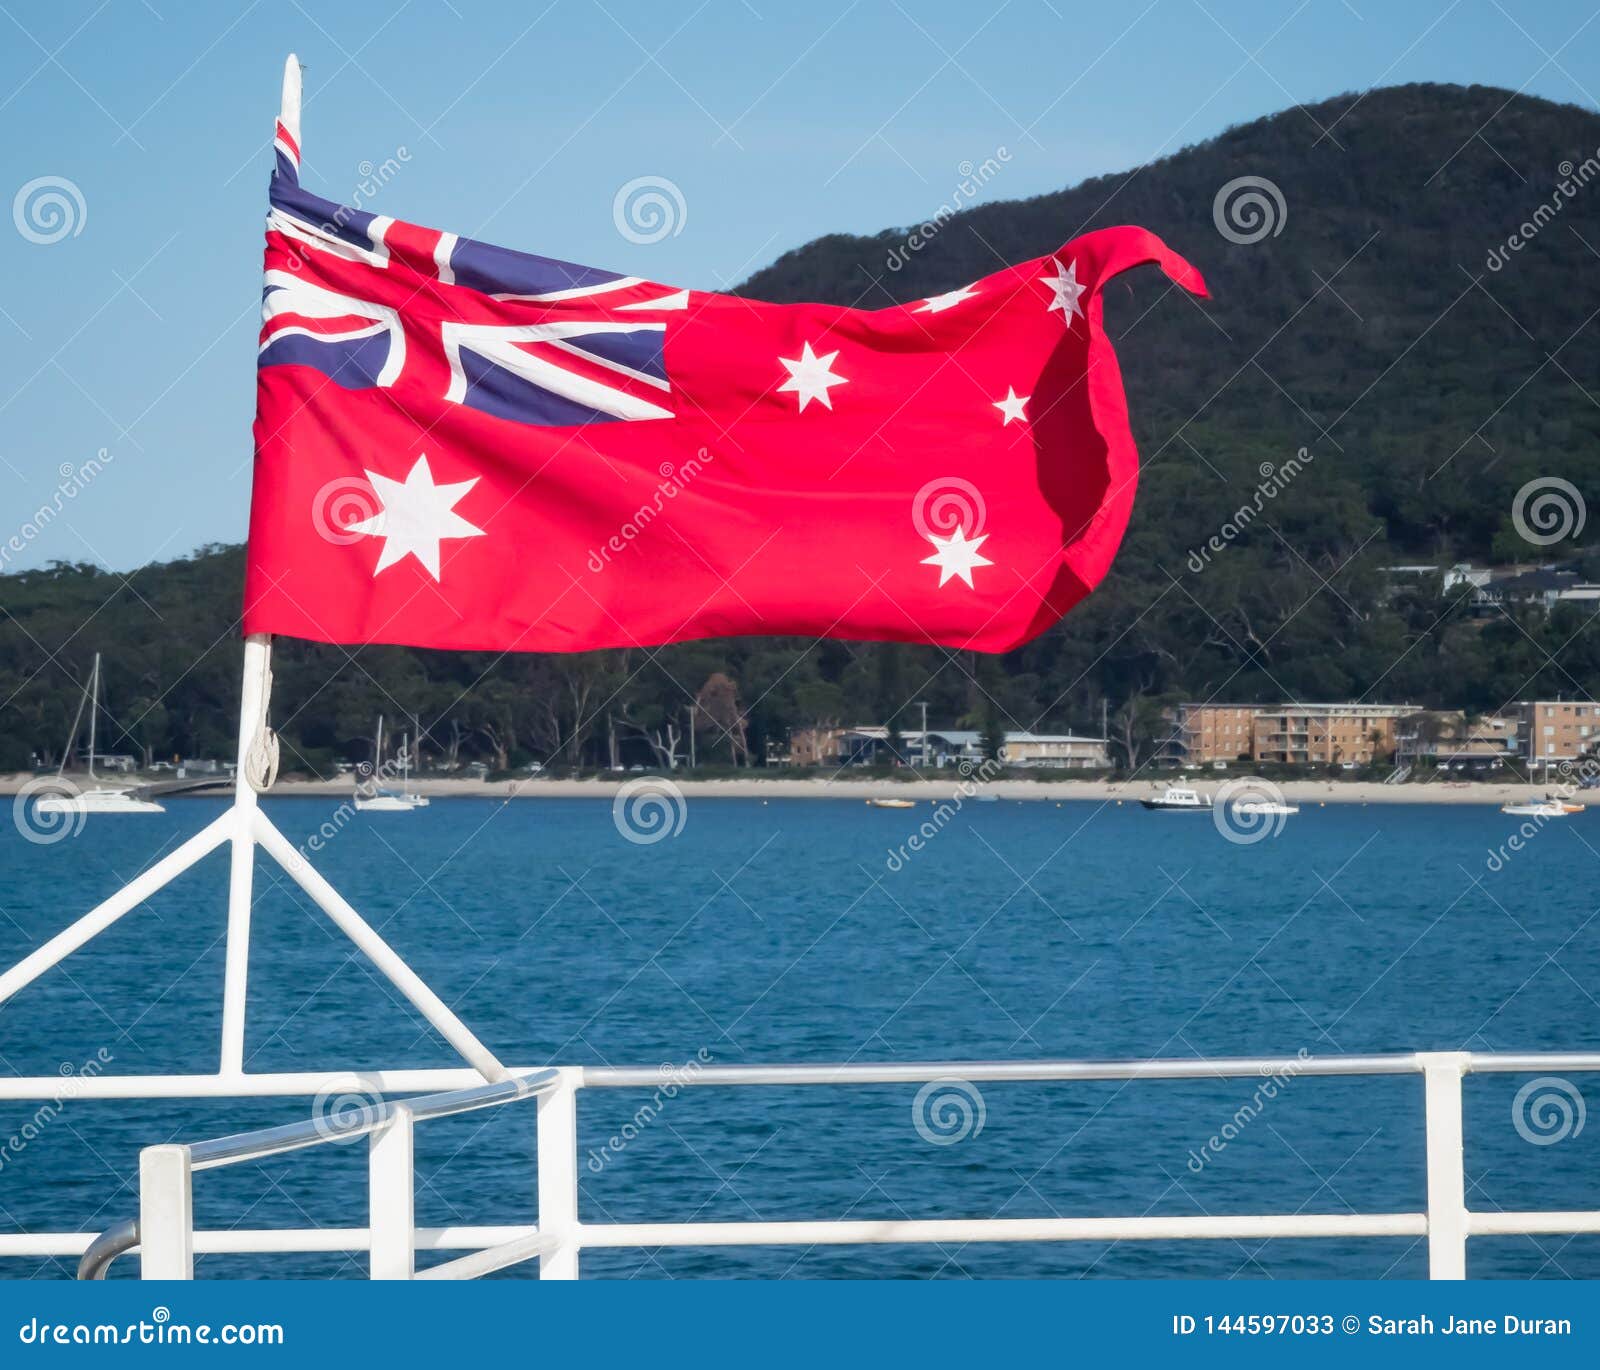 Bạn đã từng thấy cờ Úc với nền đỏ? Hãy xem bức ảnh này và khám phá ngay vẻ đẹp đặc trưng của quốc kỳ này. Cờ Úc với nền đỏ mang ý nghĩa về sự can đảm, nhiệt huyết và sức mạnh. Hãy cùng tìm hiểu lịch sử và ý nghĩa của cờ Úc qua bức ảnh này nhé.